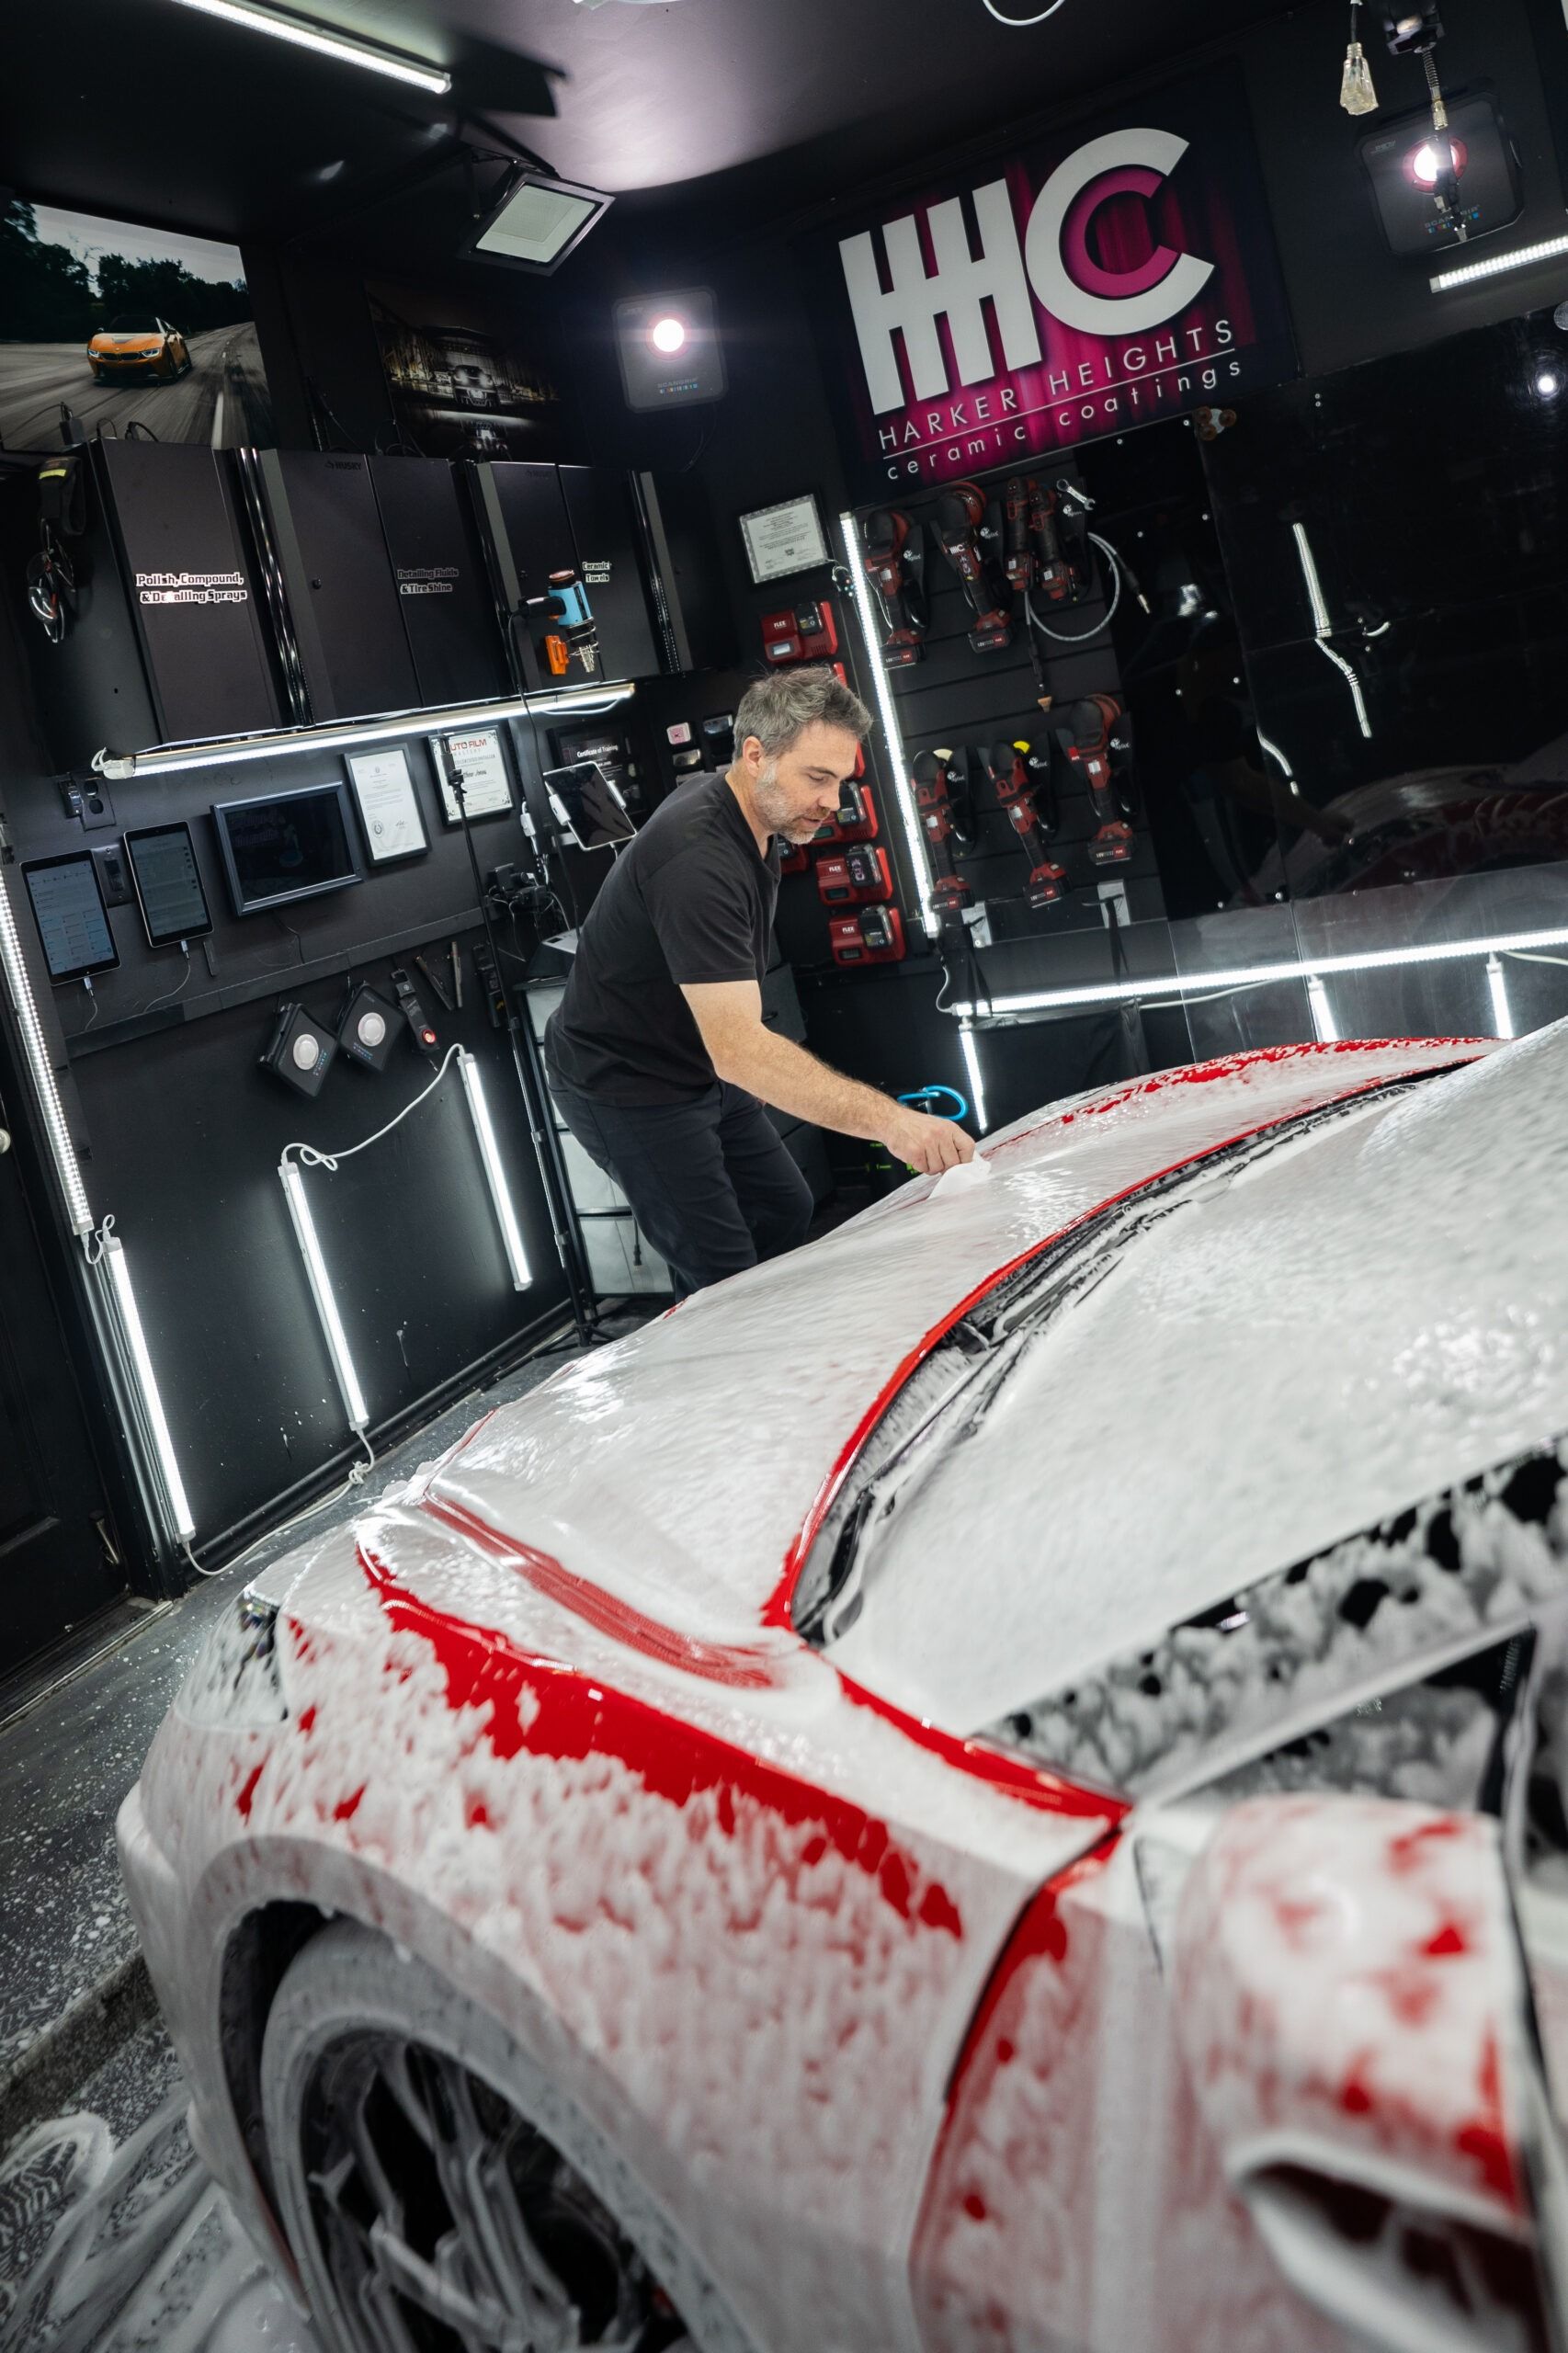 A man is washing a car in a garage.